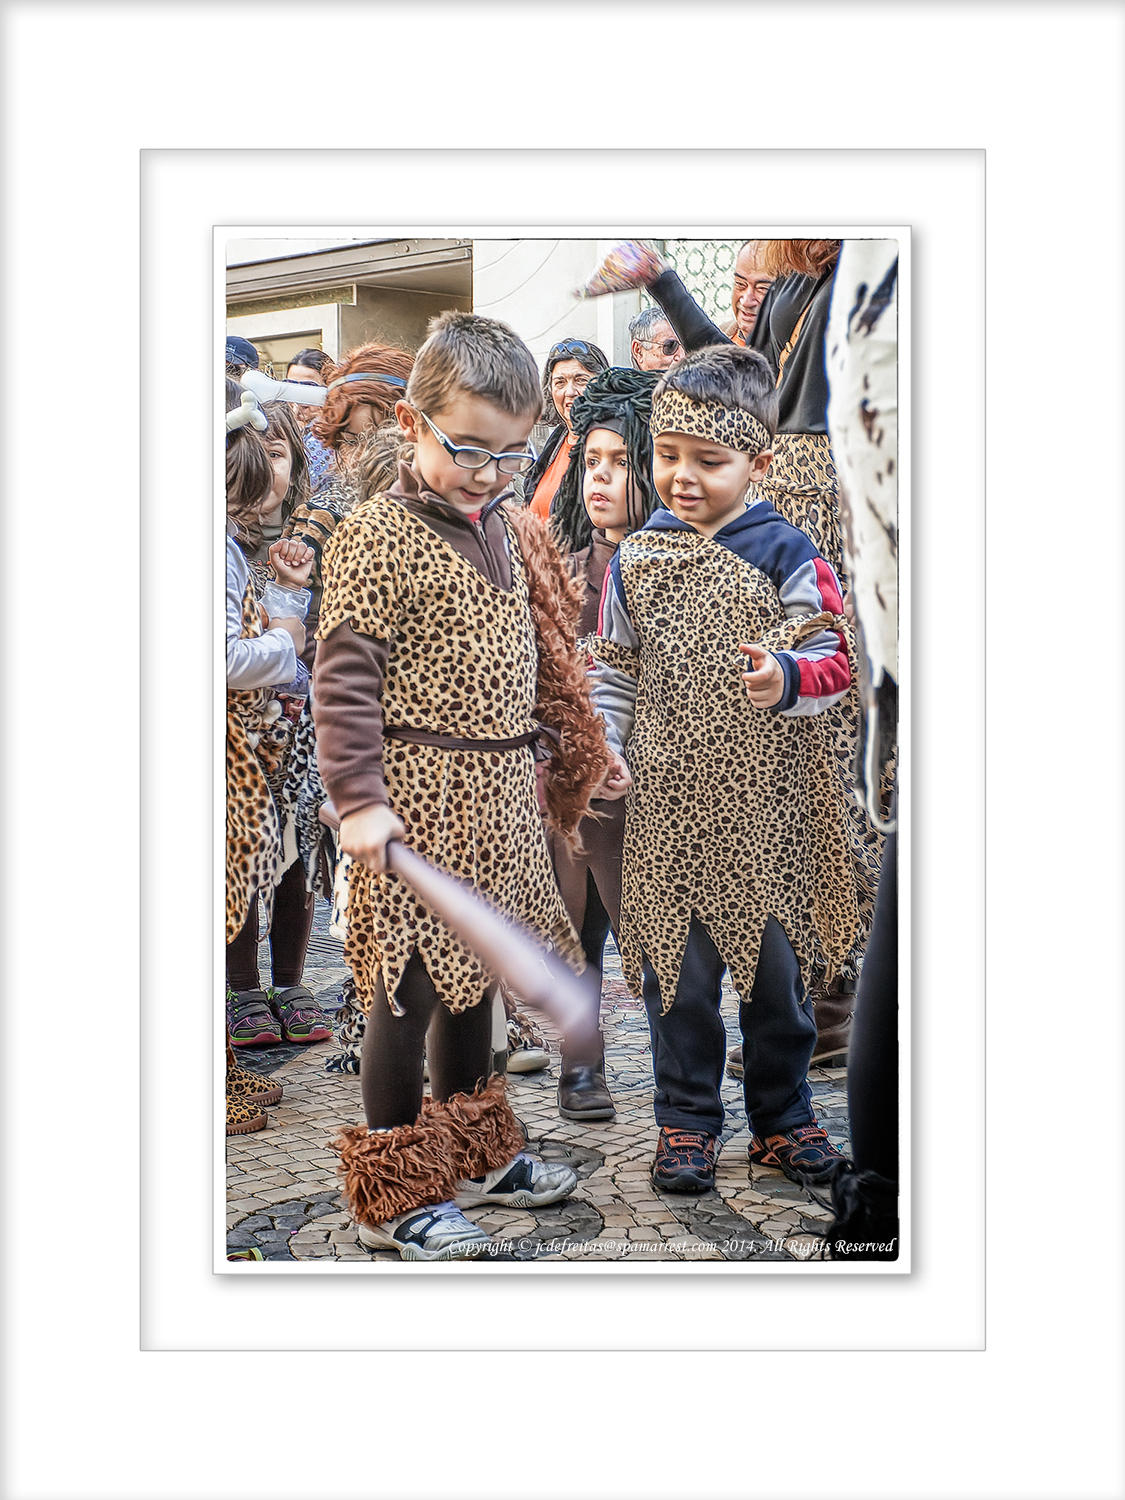  2014 - Childrens Carnival Parade - Faro, Algarve - Portugal